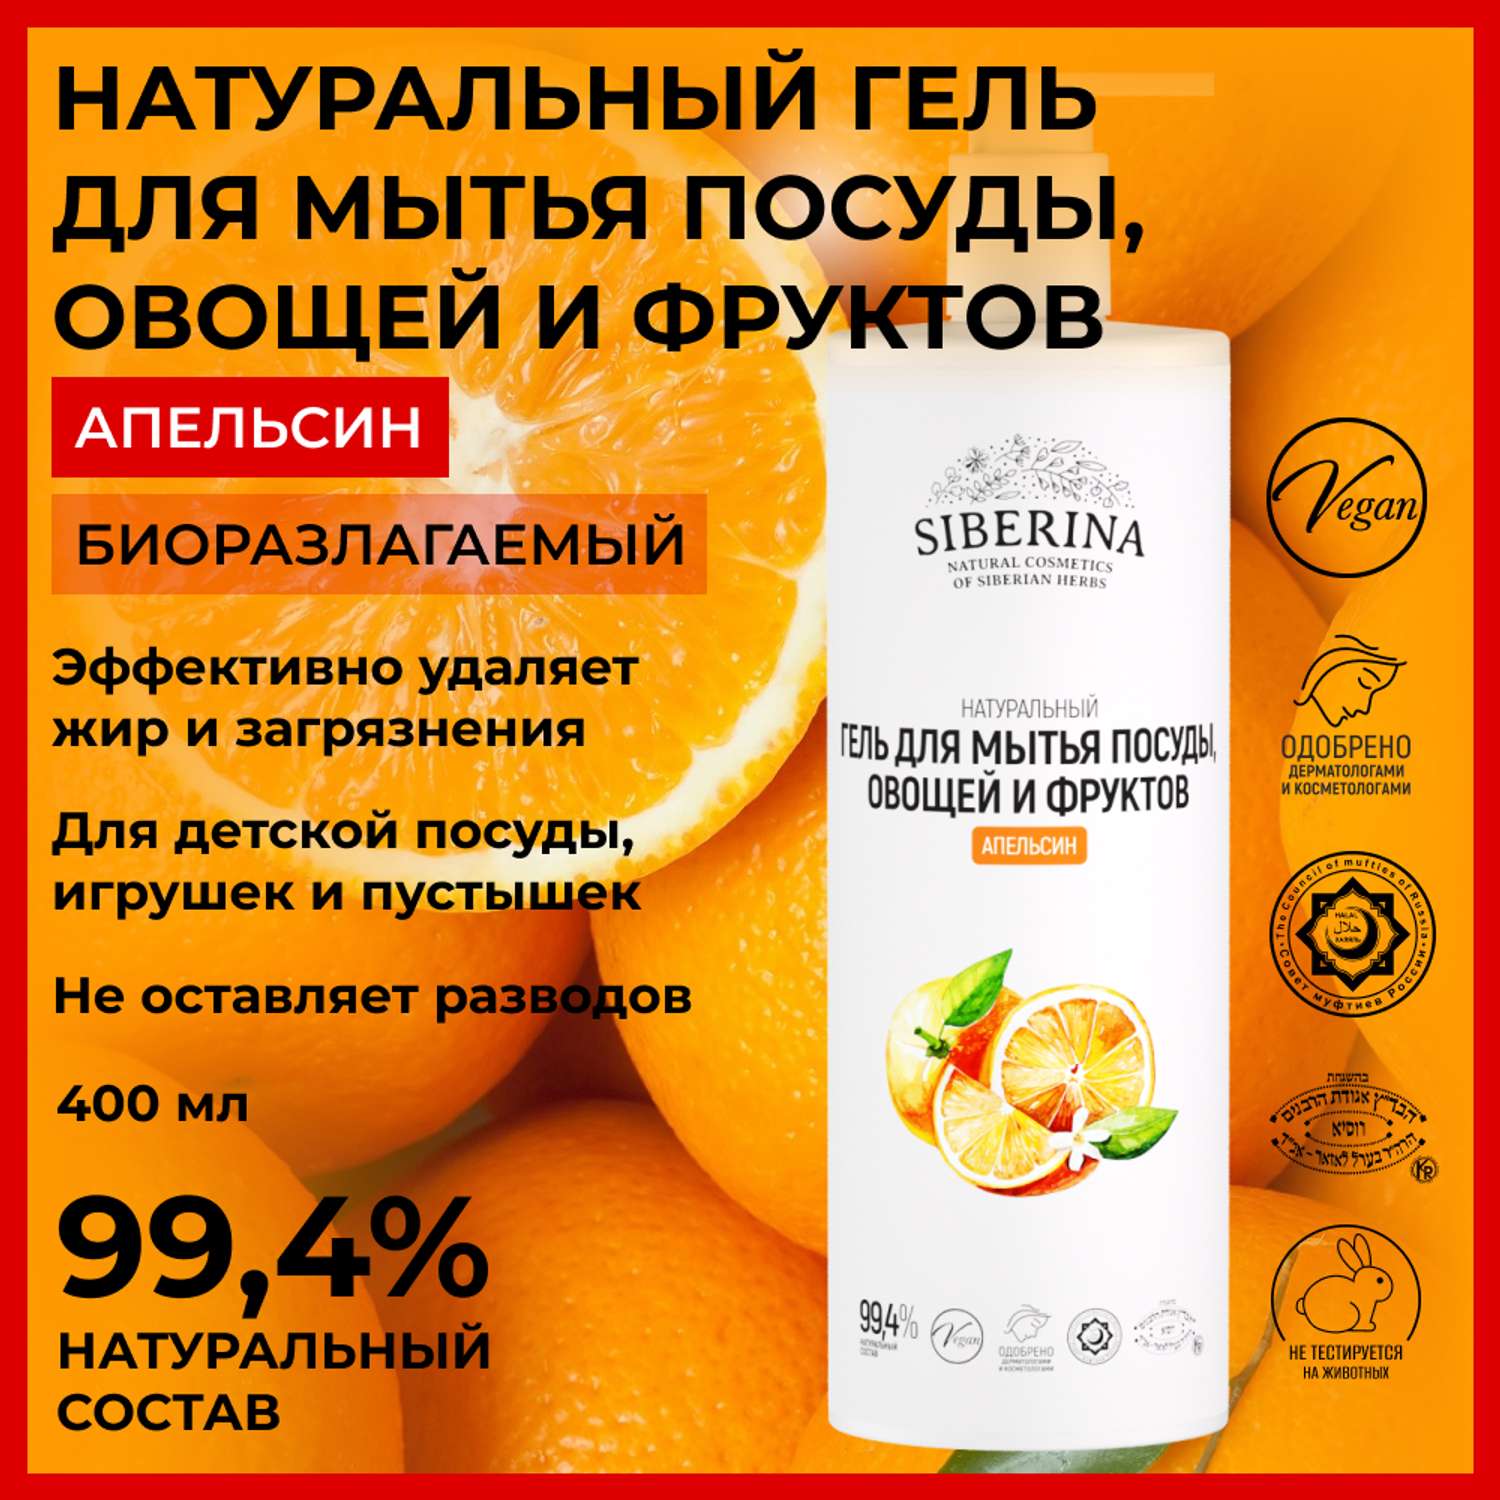 Гель для мытья посуды Siberina натуральный «Апельсин» овощей и фруктов 400 мл - фото 2